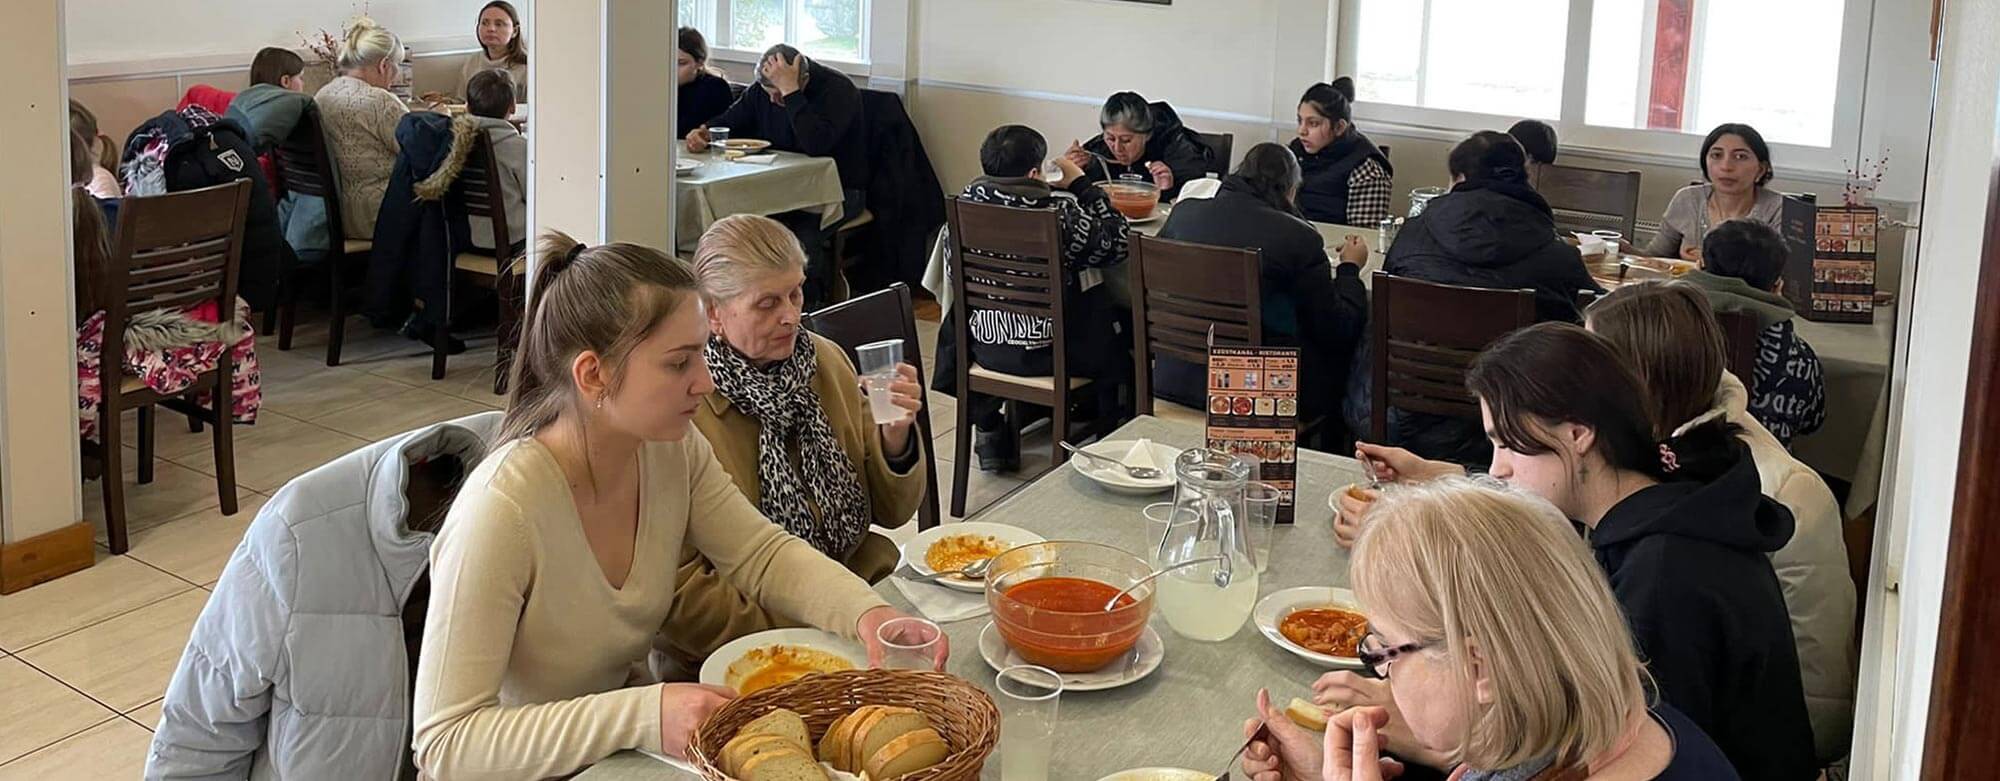 Frauen und in Kinder in einem Speisesaal beim Essen